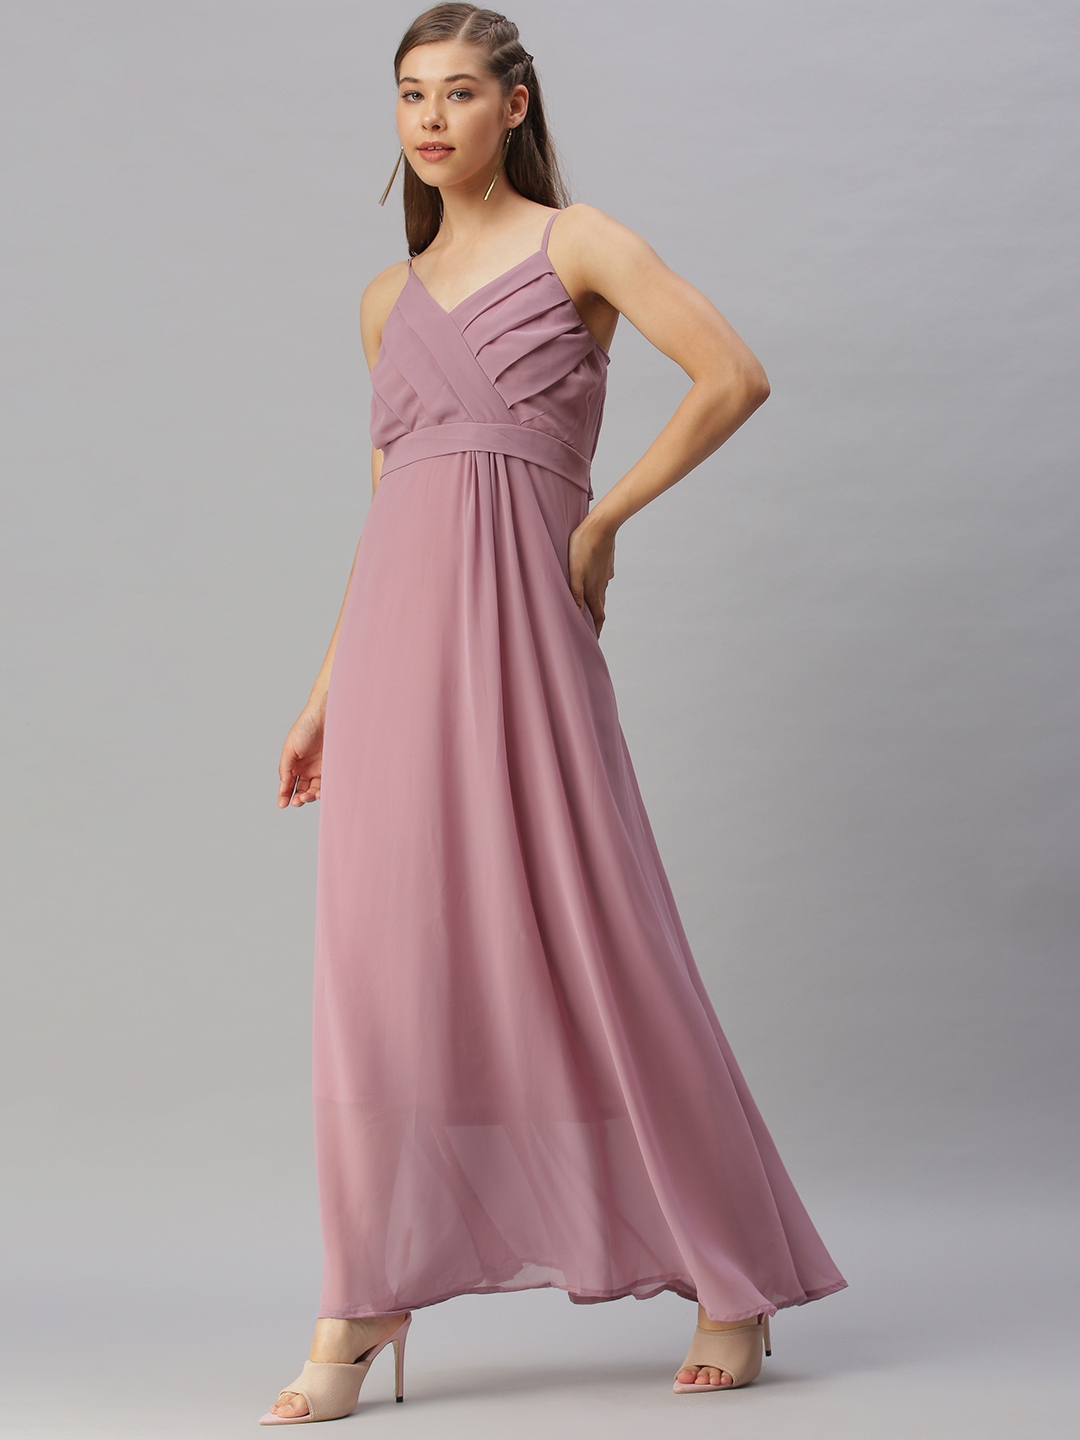 Women's Purple Georgette Solid Dresses